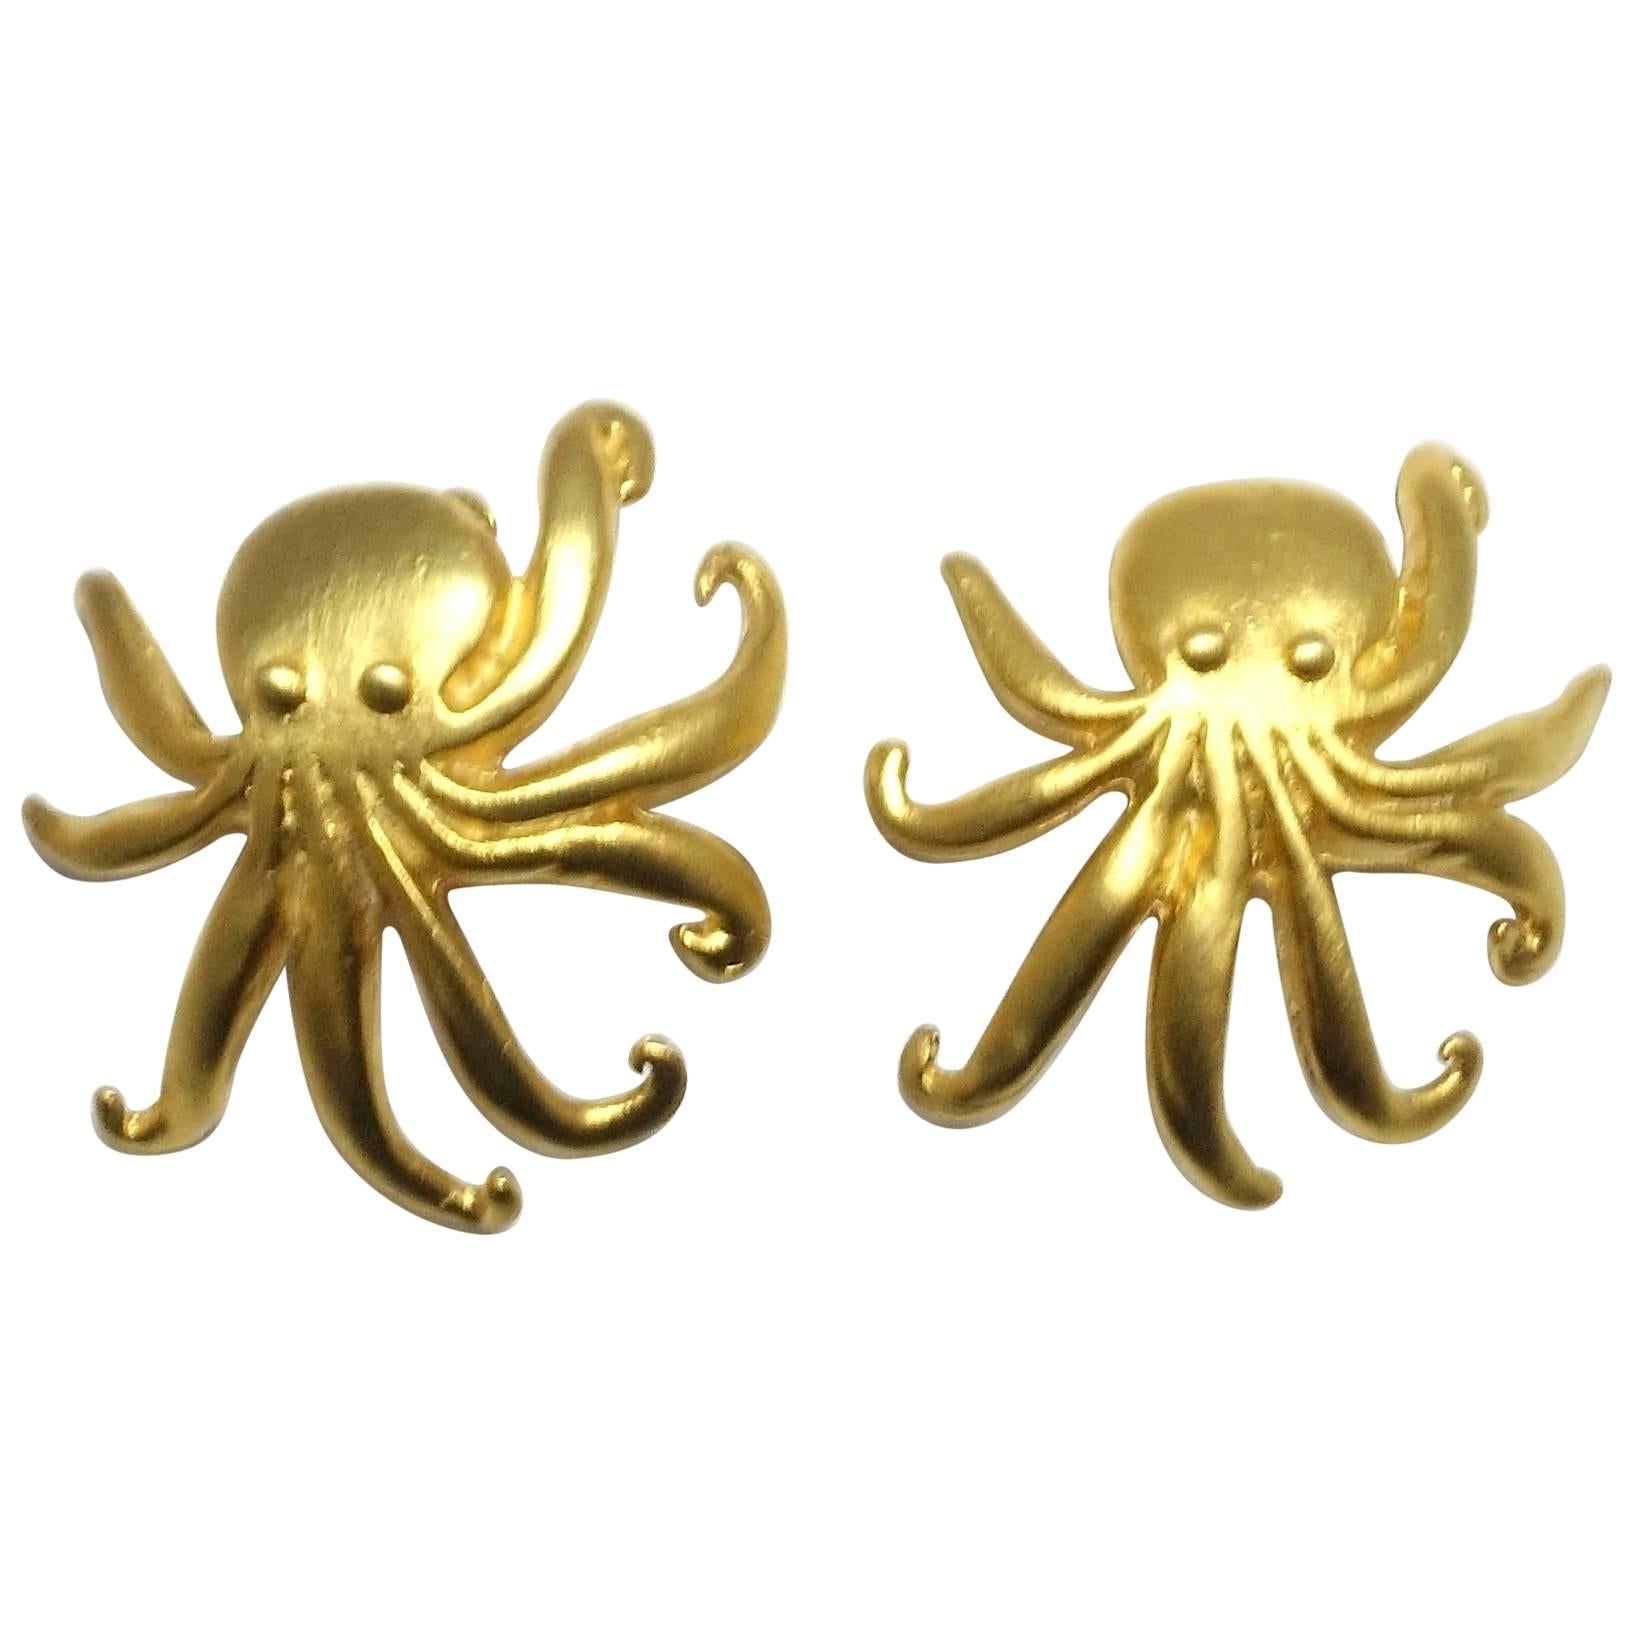 Kenneth Jay Lane Octopus Earrings